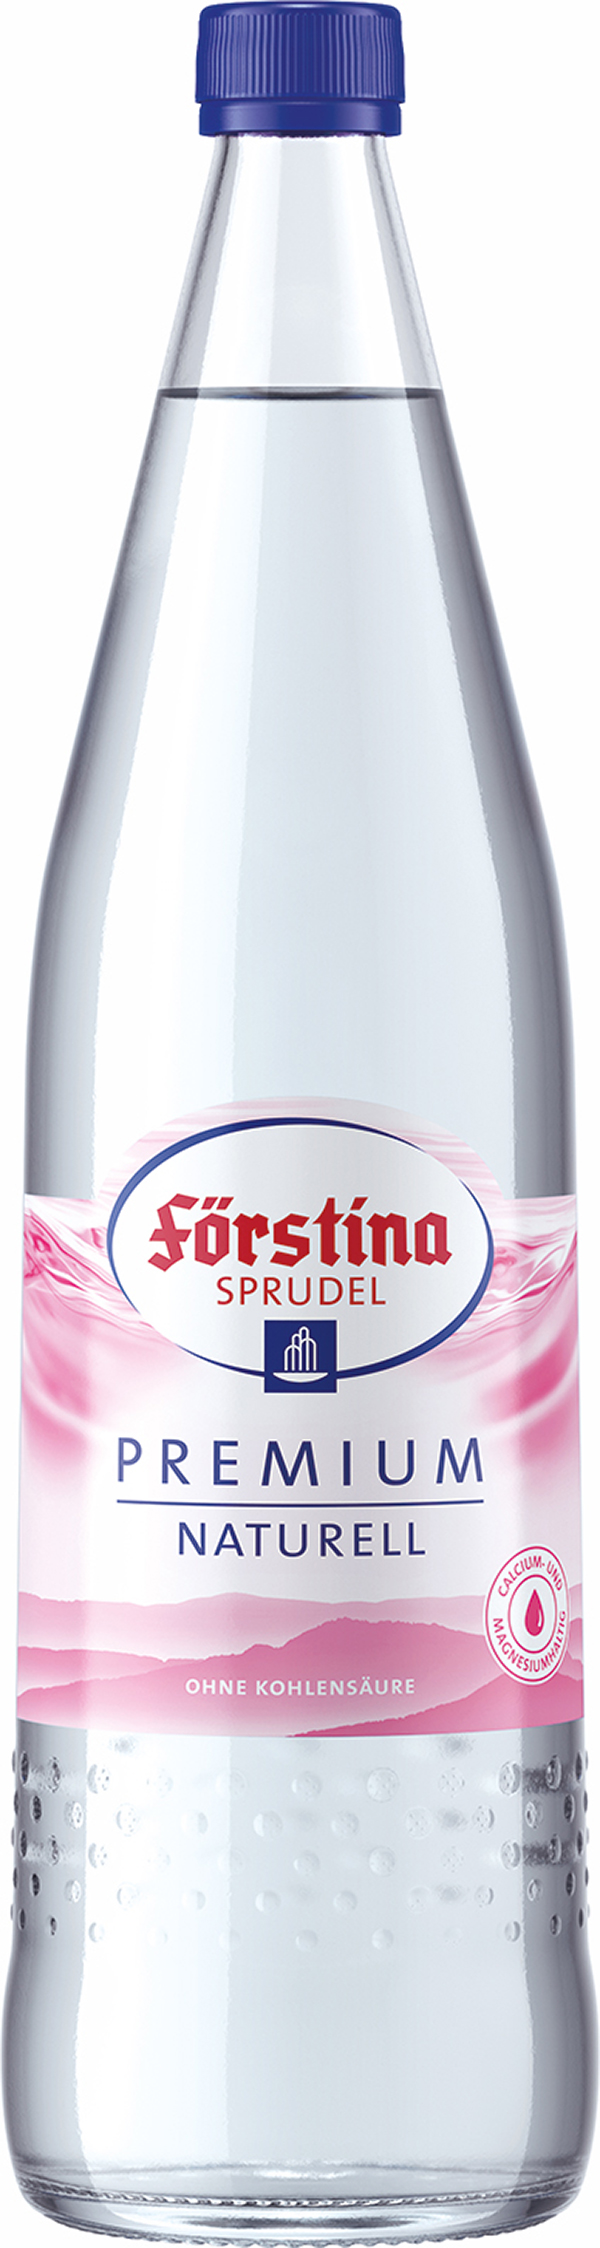 Förstina Sprudel Premium Naturell 12 x 0,7 l